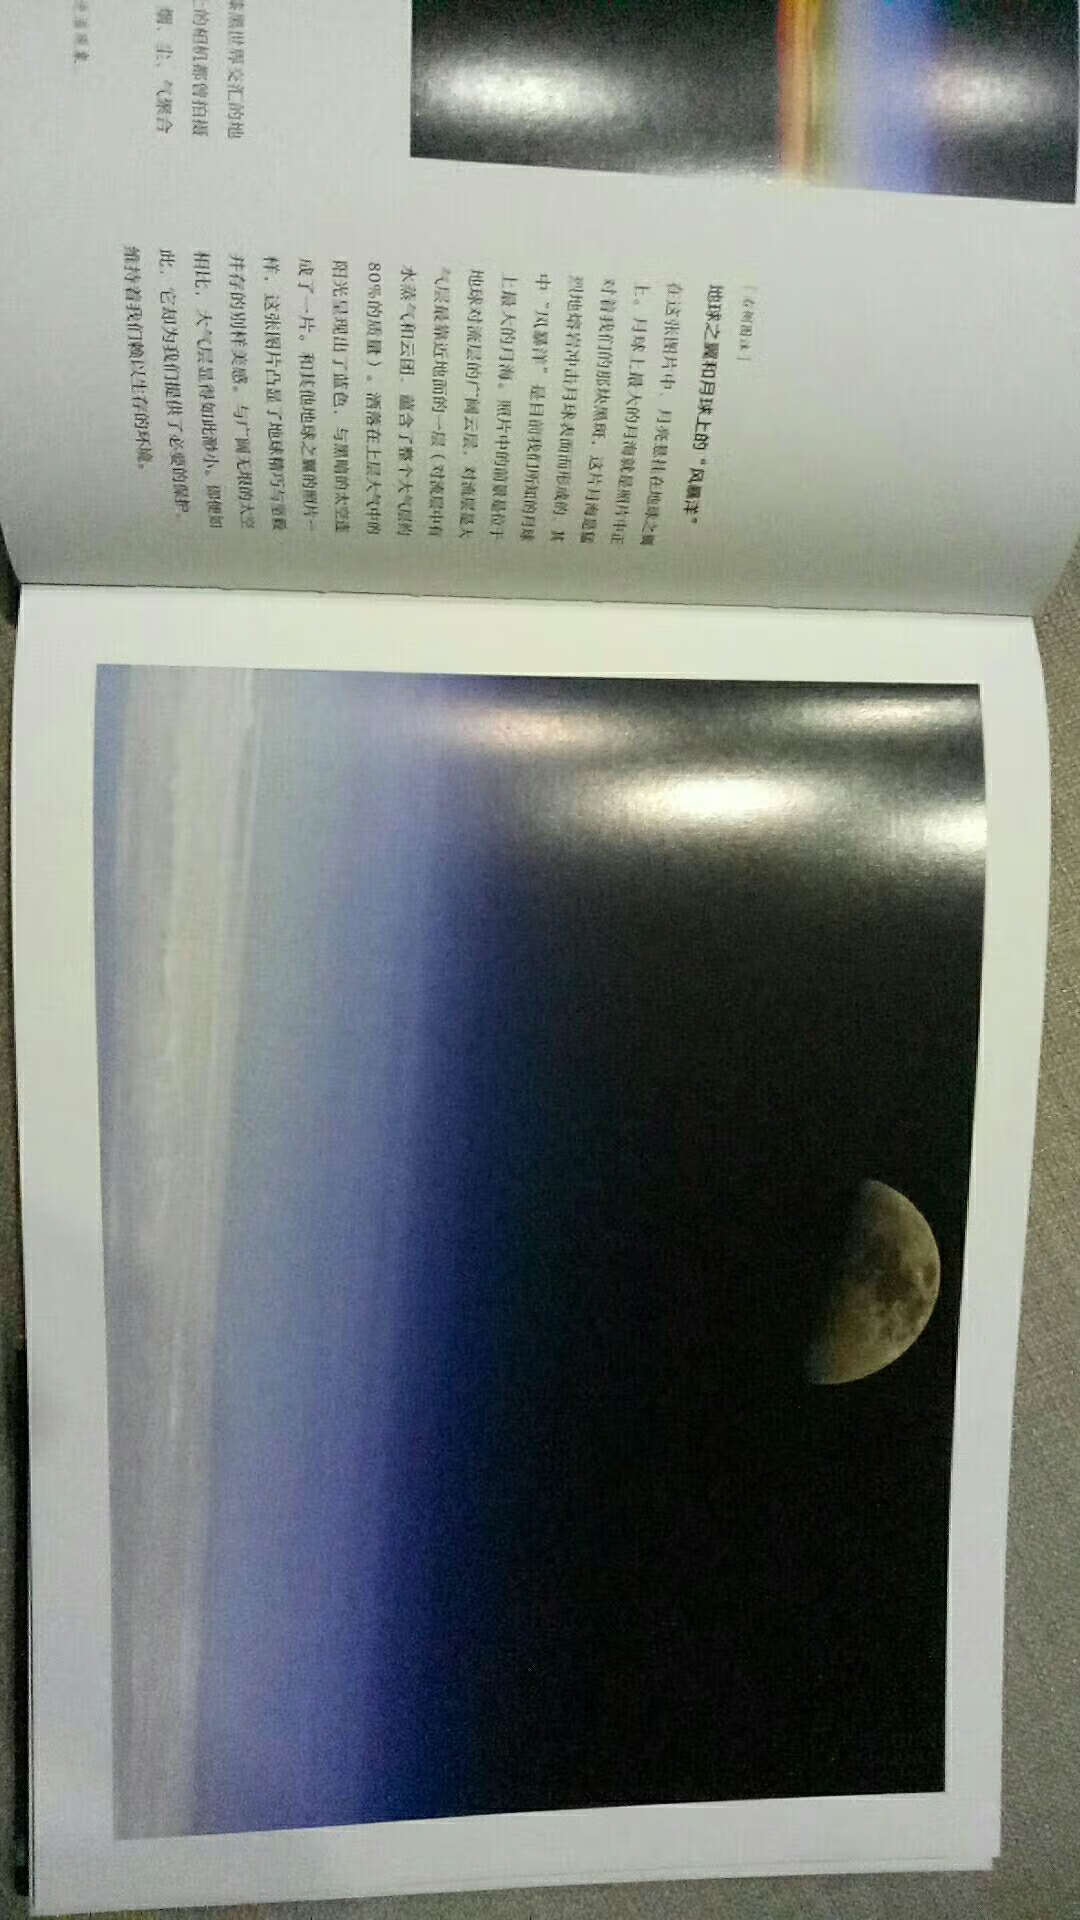 特别美的一本书，图片太震撼了!有和《太空之眼》重复的地方，毕竟是同一个哈勃同一个NASA……